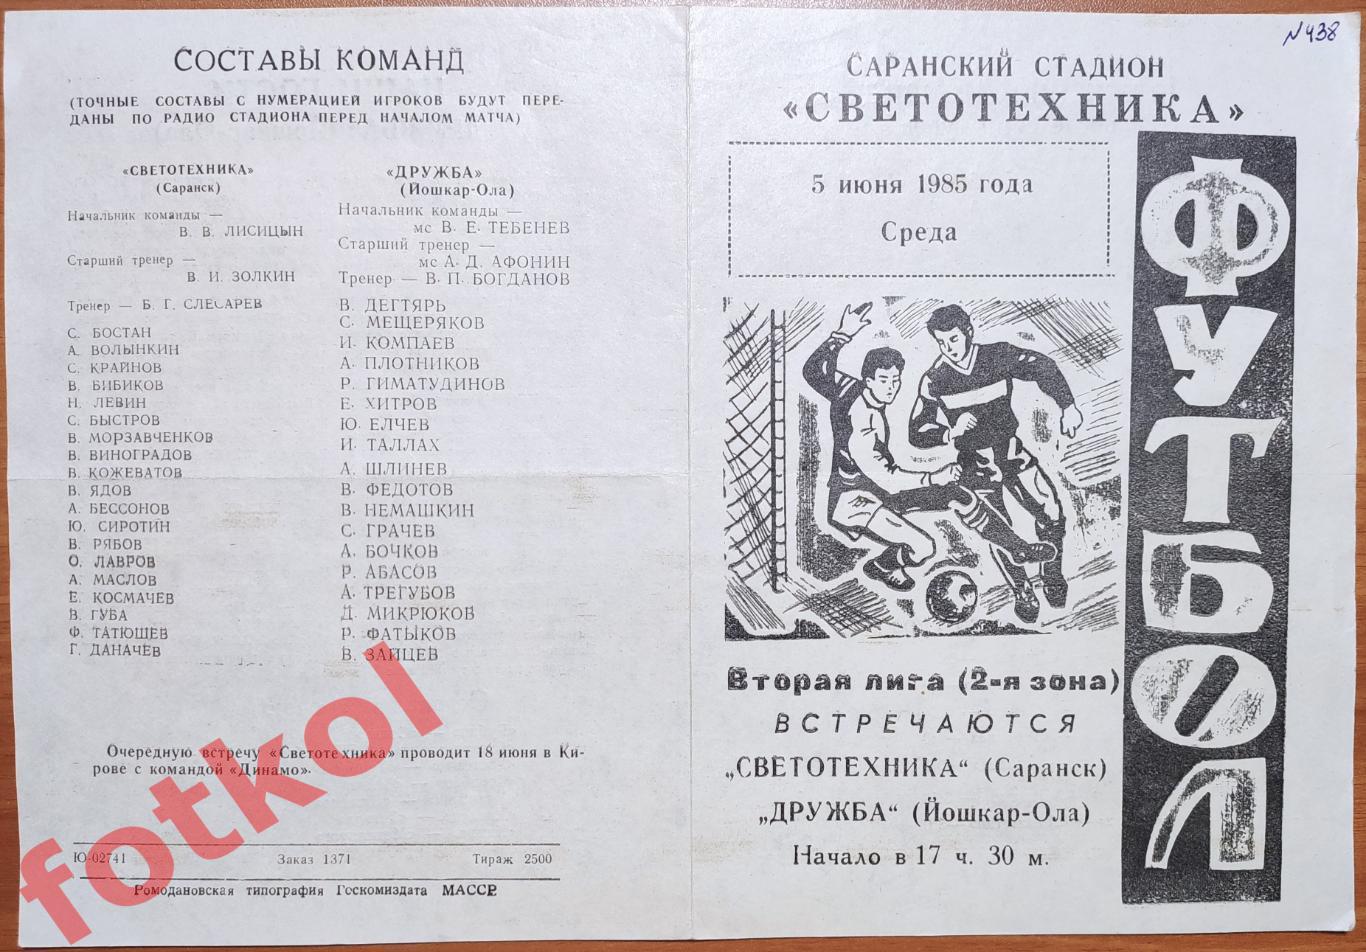 СВЕТОТЕХНИКА Саранск - ДРУЖБА Йошкар - Ола 05.06.1985